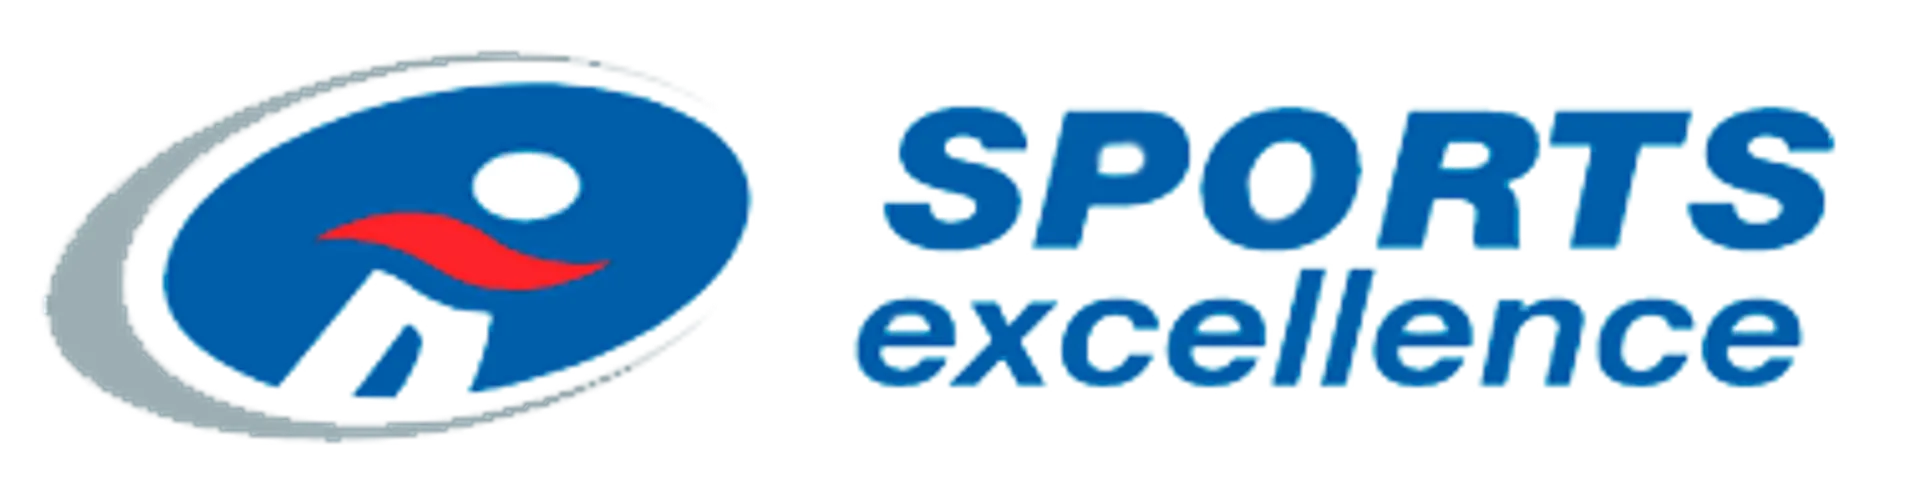 SPORTS EXCELLENCE logo de circulaires